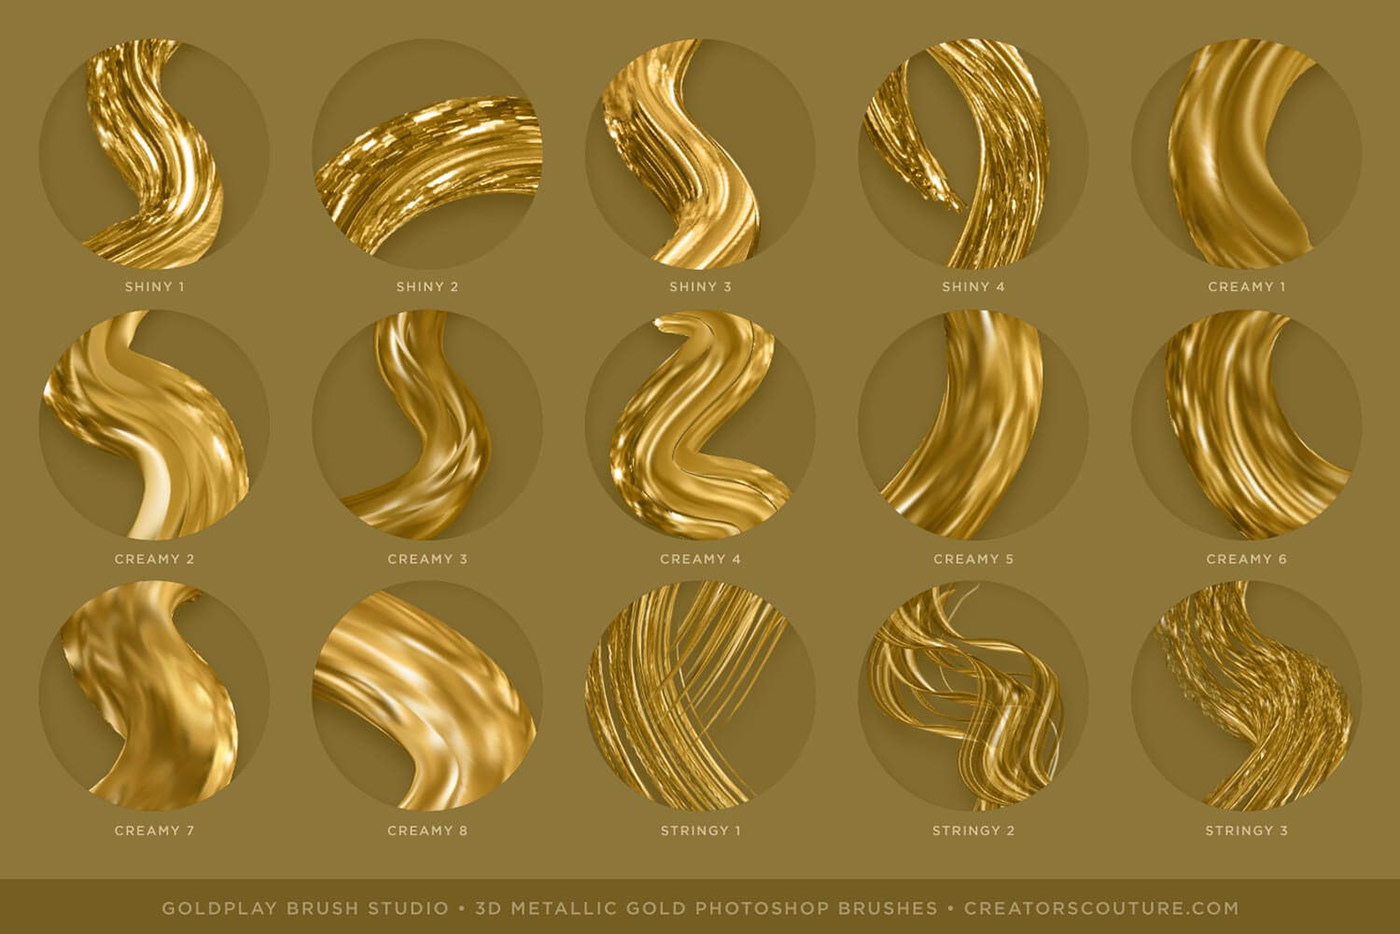 3D brush brushes gold lettering metallic Photoshop brush Free photoshop brush Photoshop brushes metallic gold